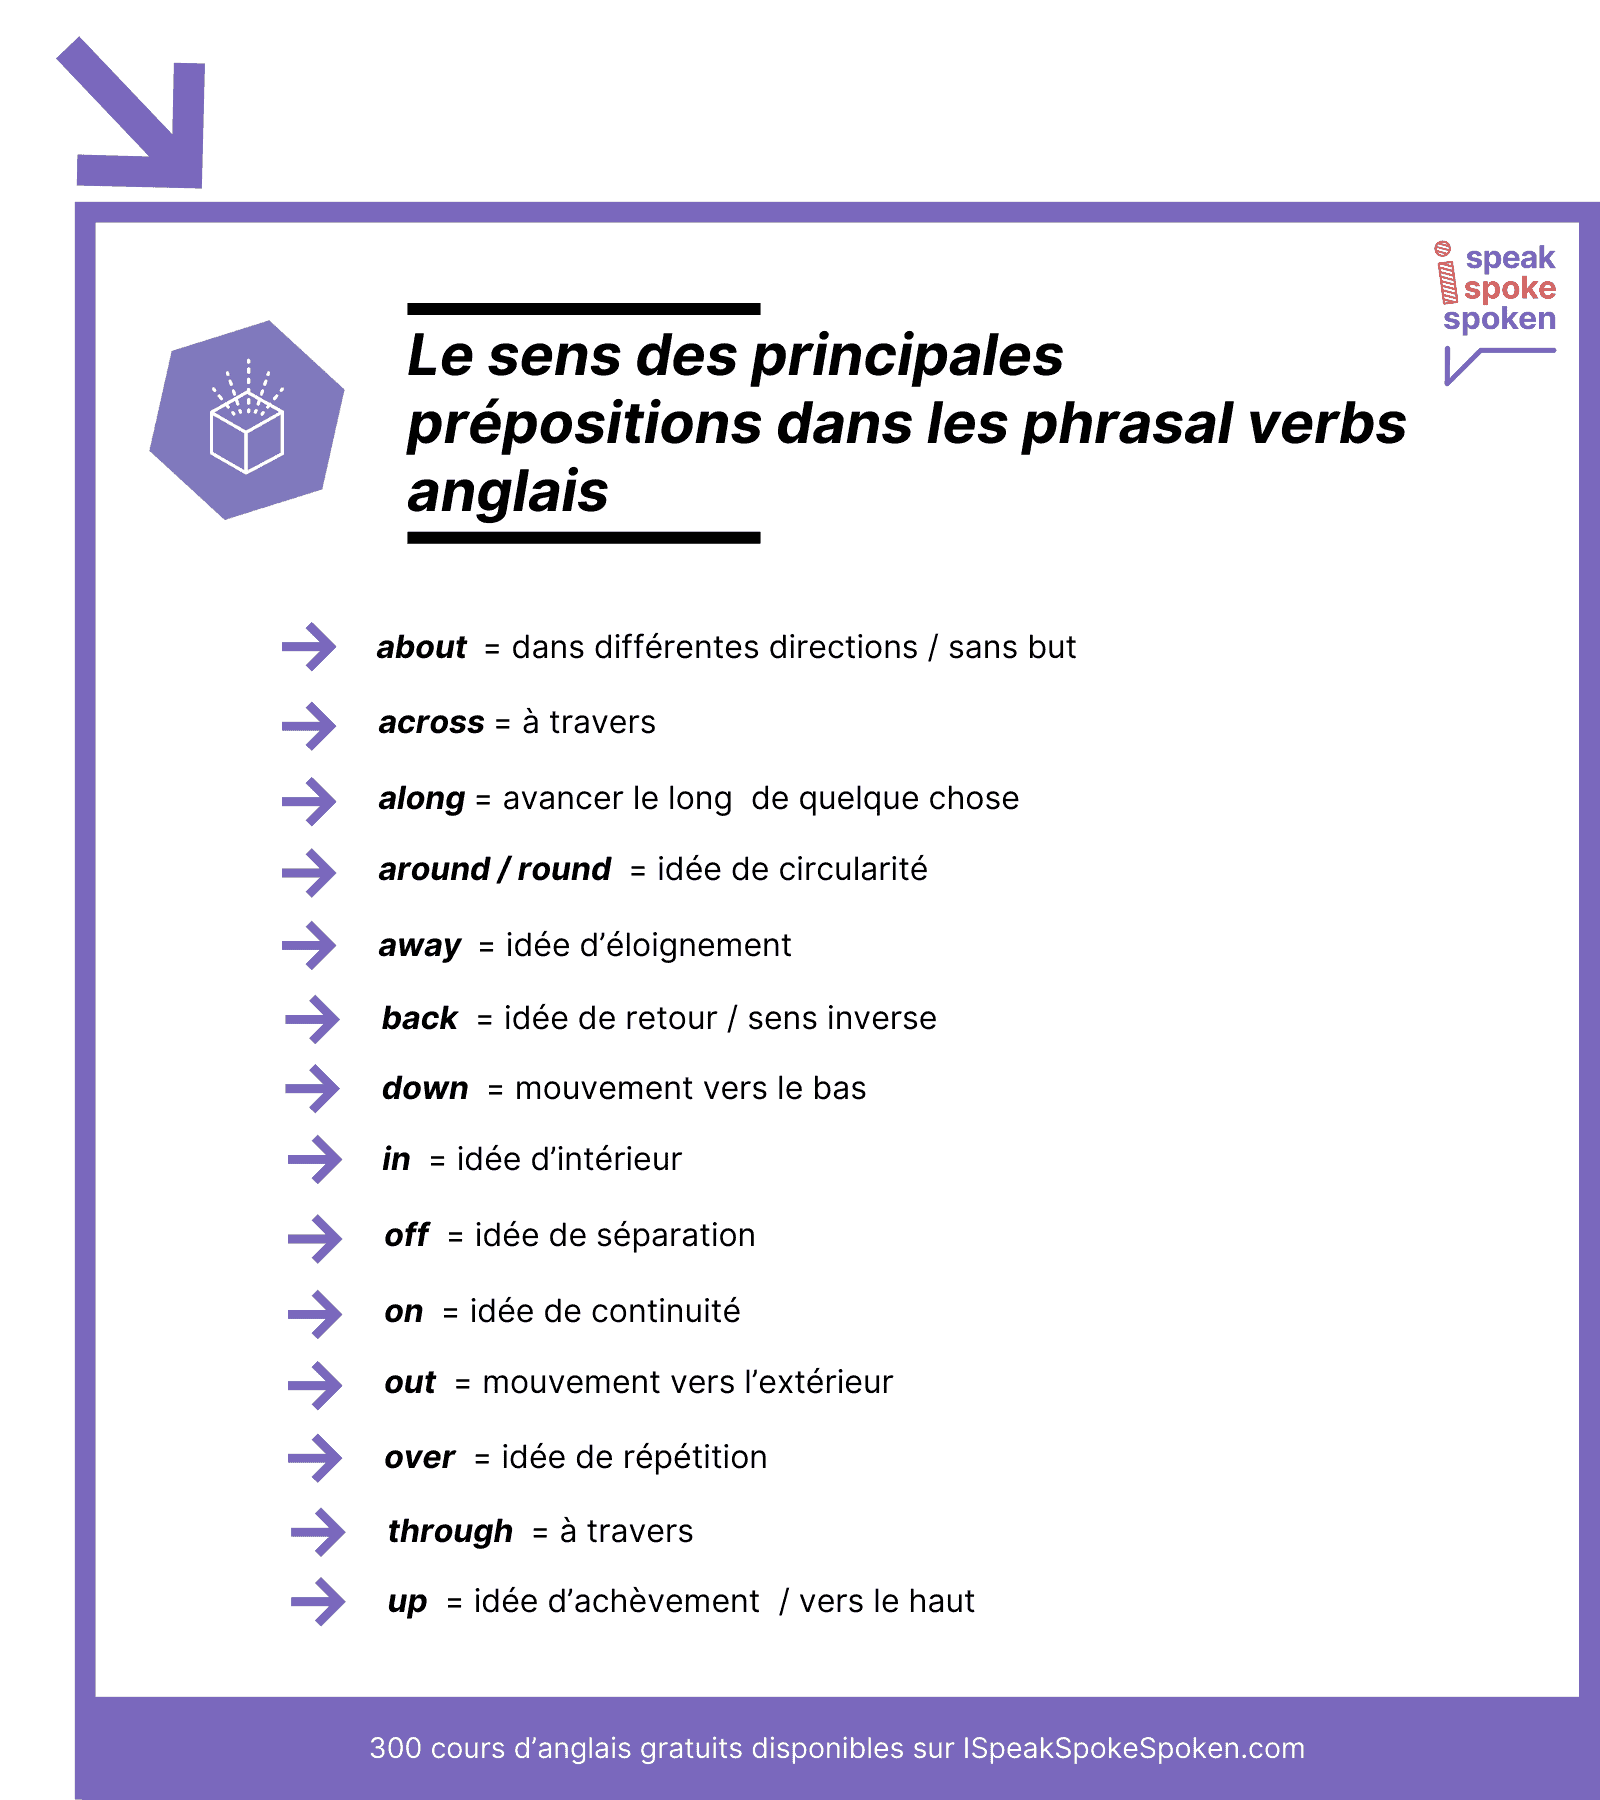 le sens des principales prépositions dans les phrasal verbs anglais